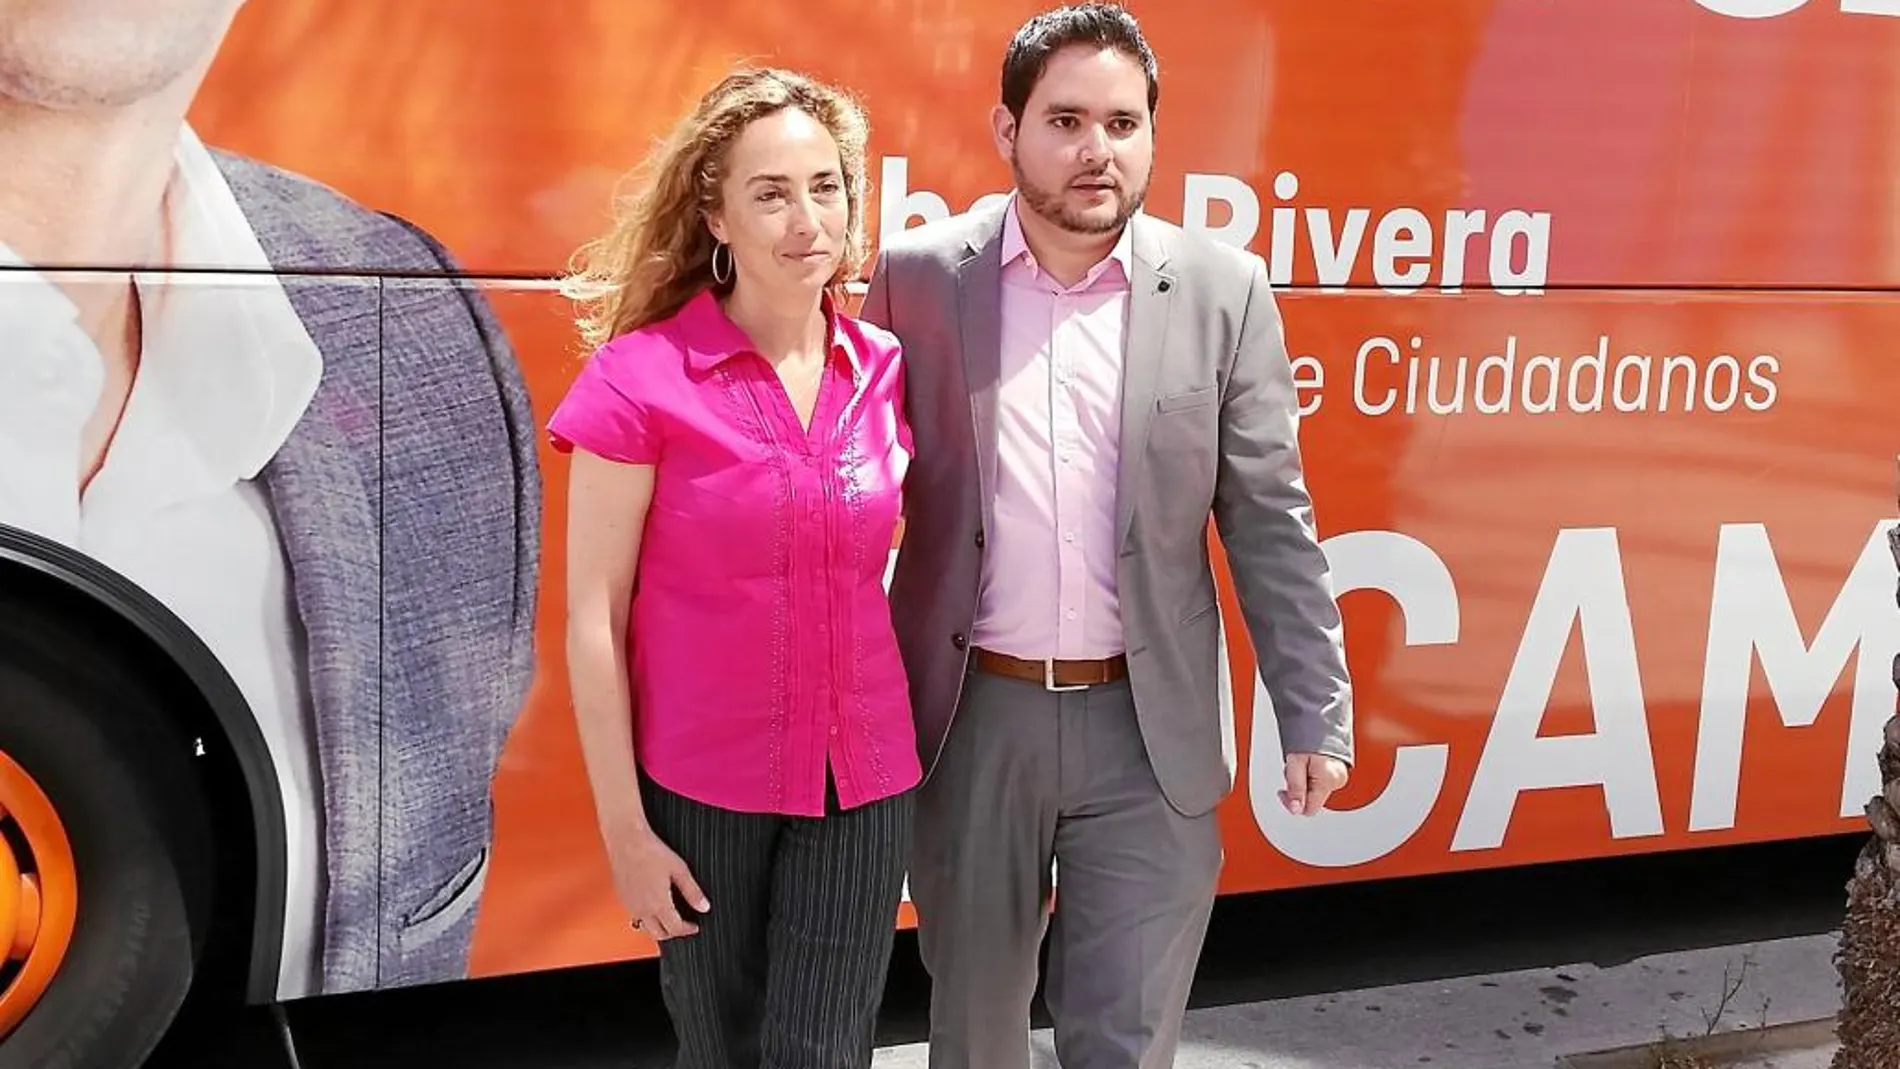 La candidata de C’s a la Generalitat, Carolina Punset, junto al candidato municipal, David Caballero, ayer en Elche